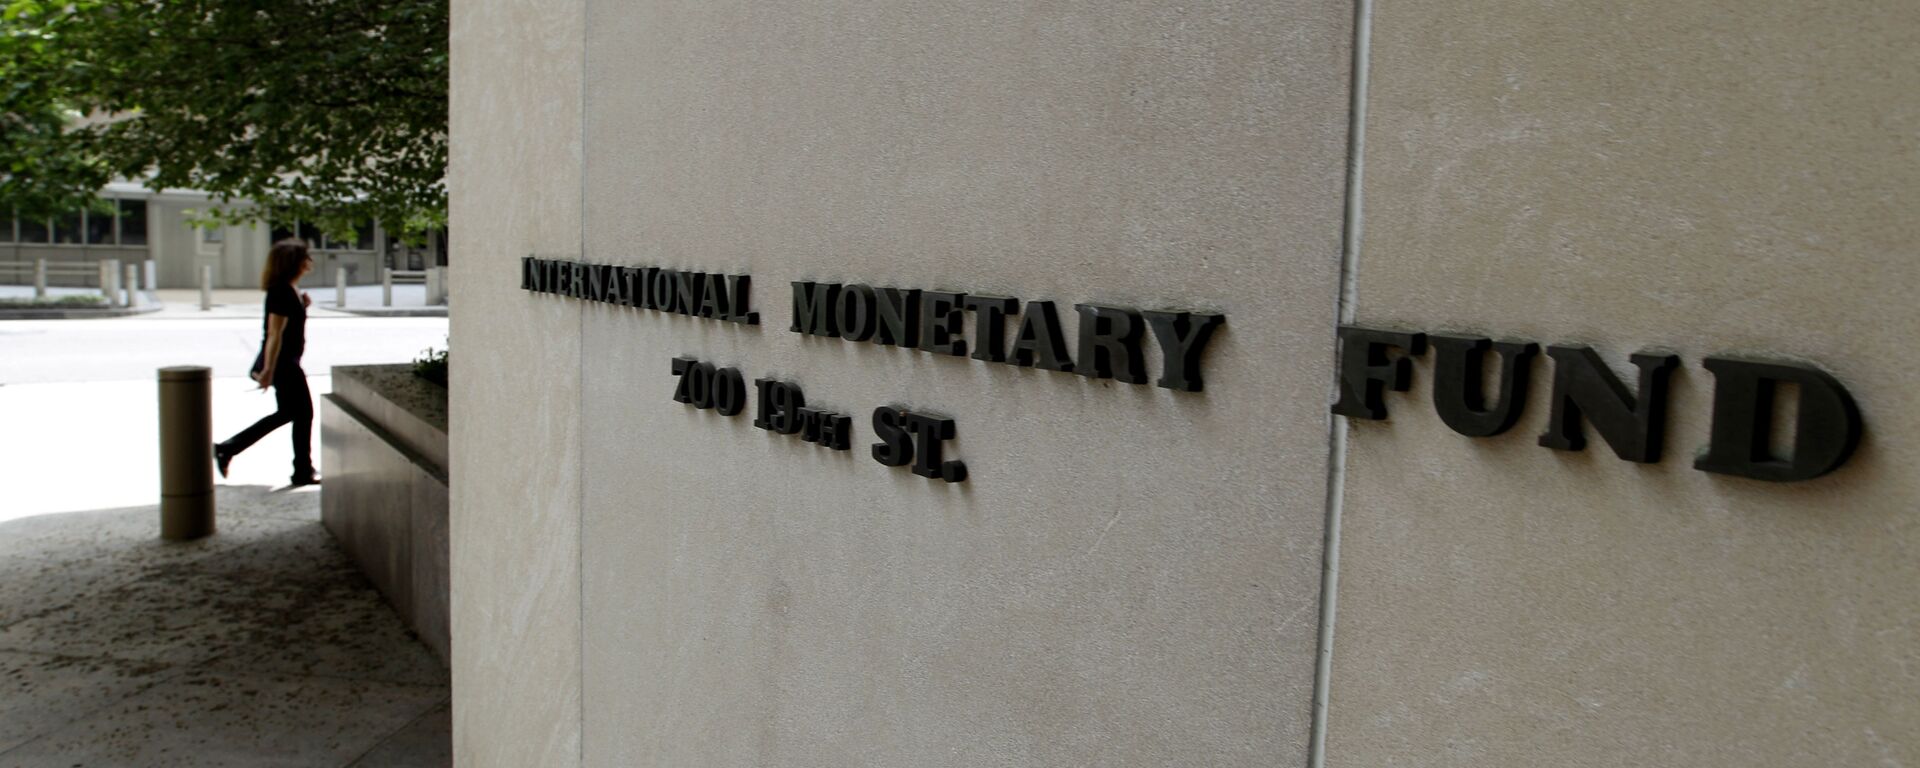 Международный Валютный Фонд, главный офис в Вашингтоне - Sputnik Грузия, 1920, 07.04.2021